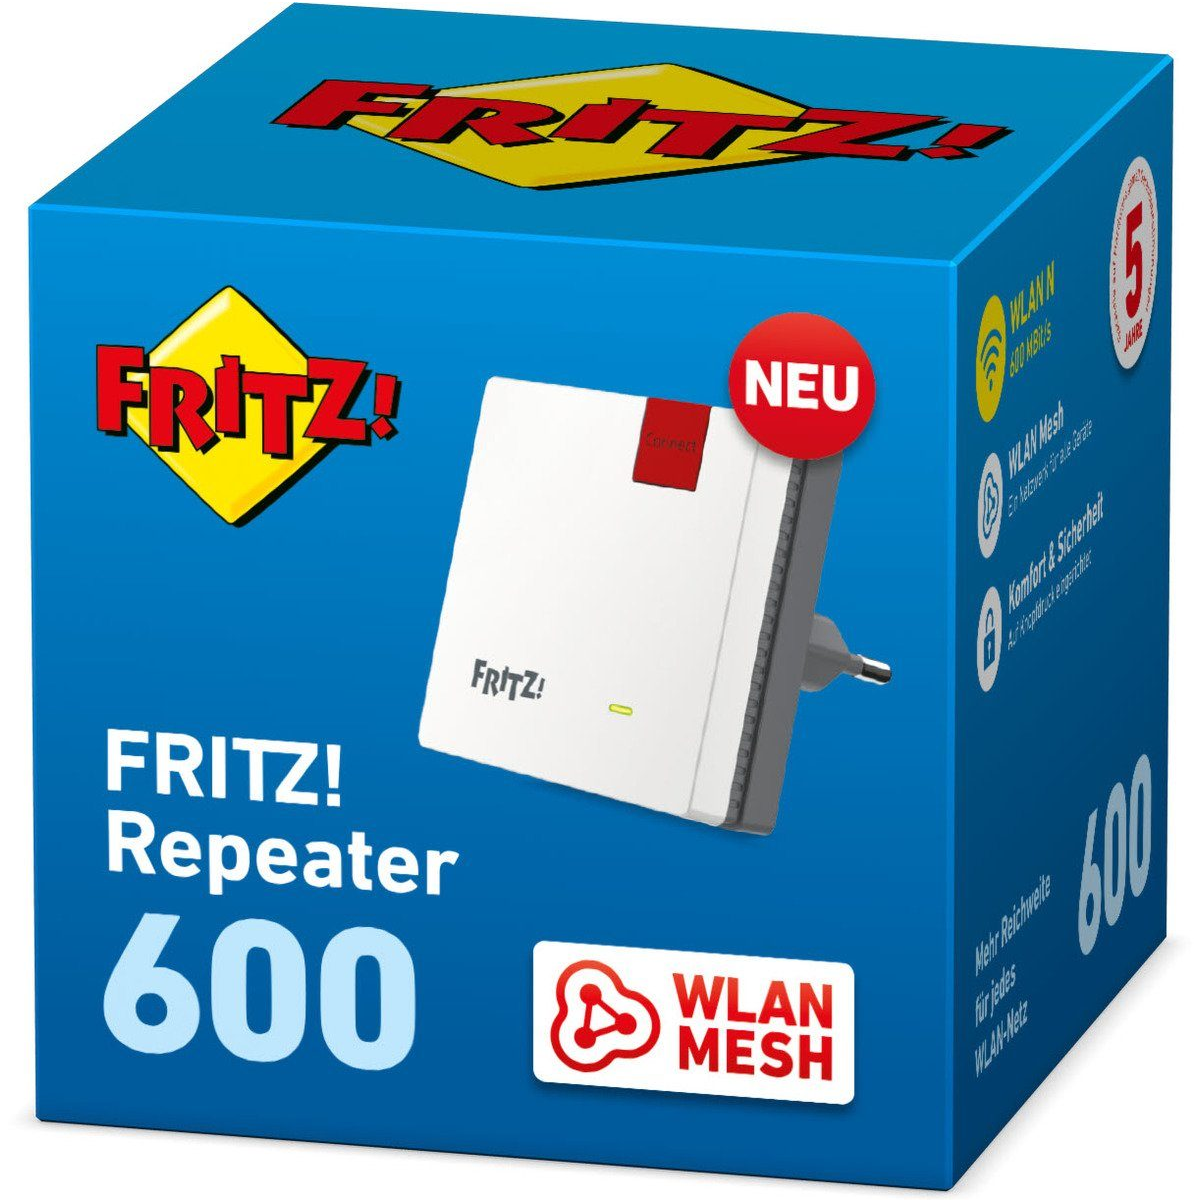 AVM FRITZ! Repeater WLAN Mesh 600 Mbit/s Fritzbox WPS Signal Verstärker TOP NEU